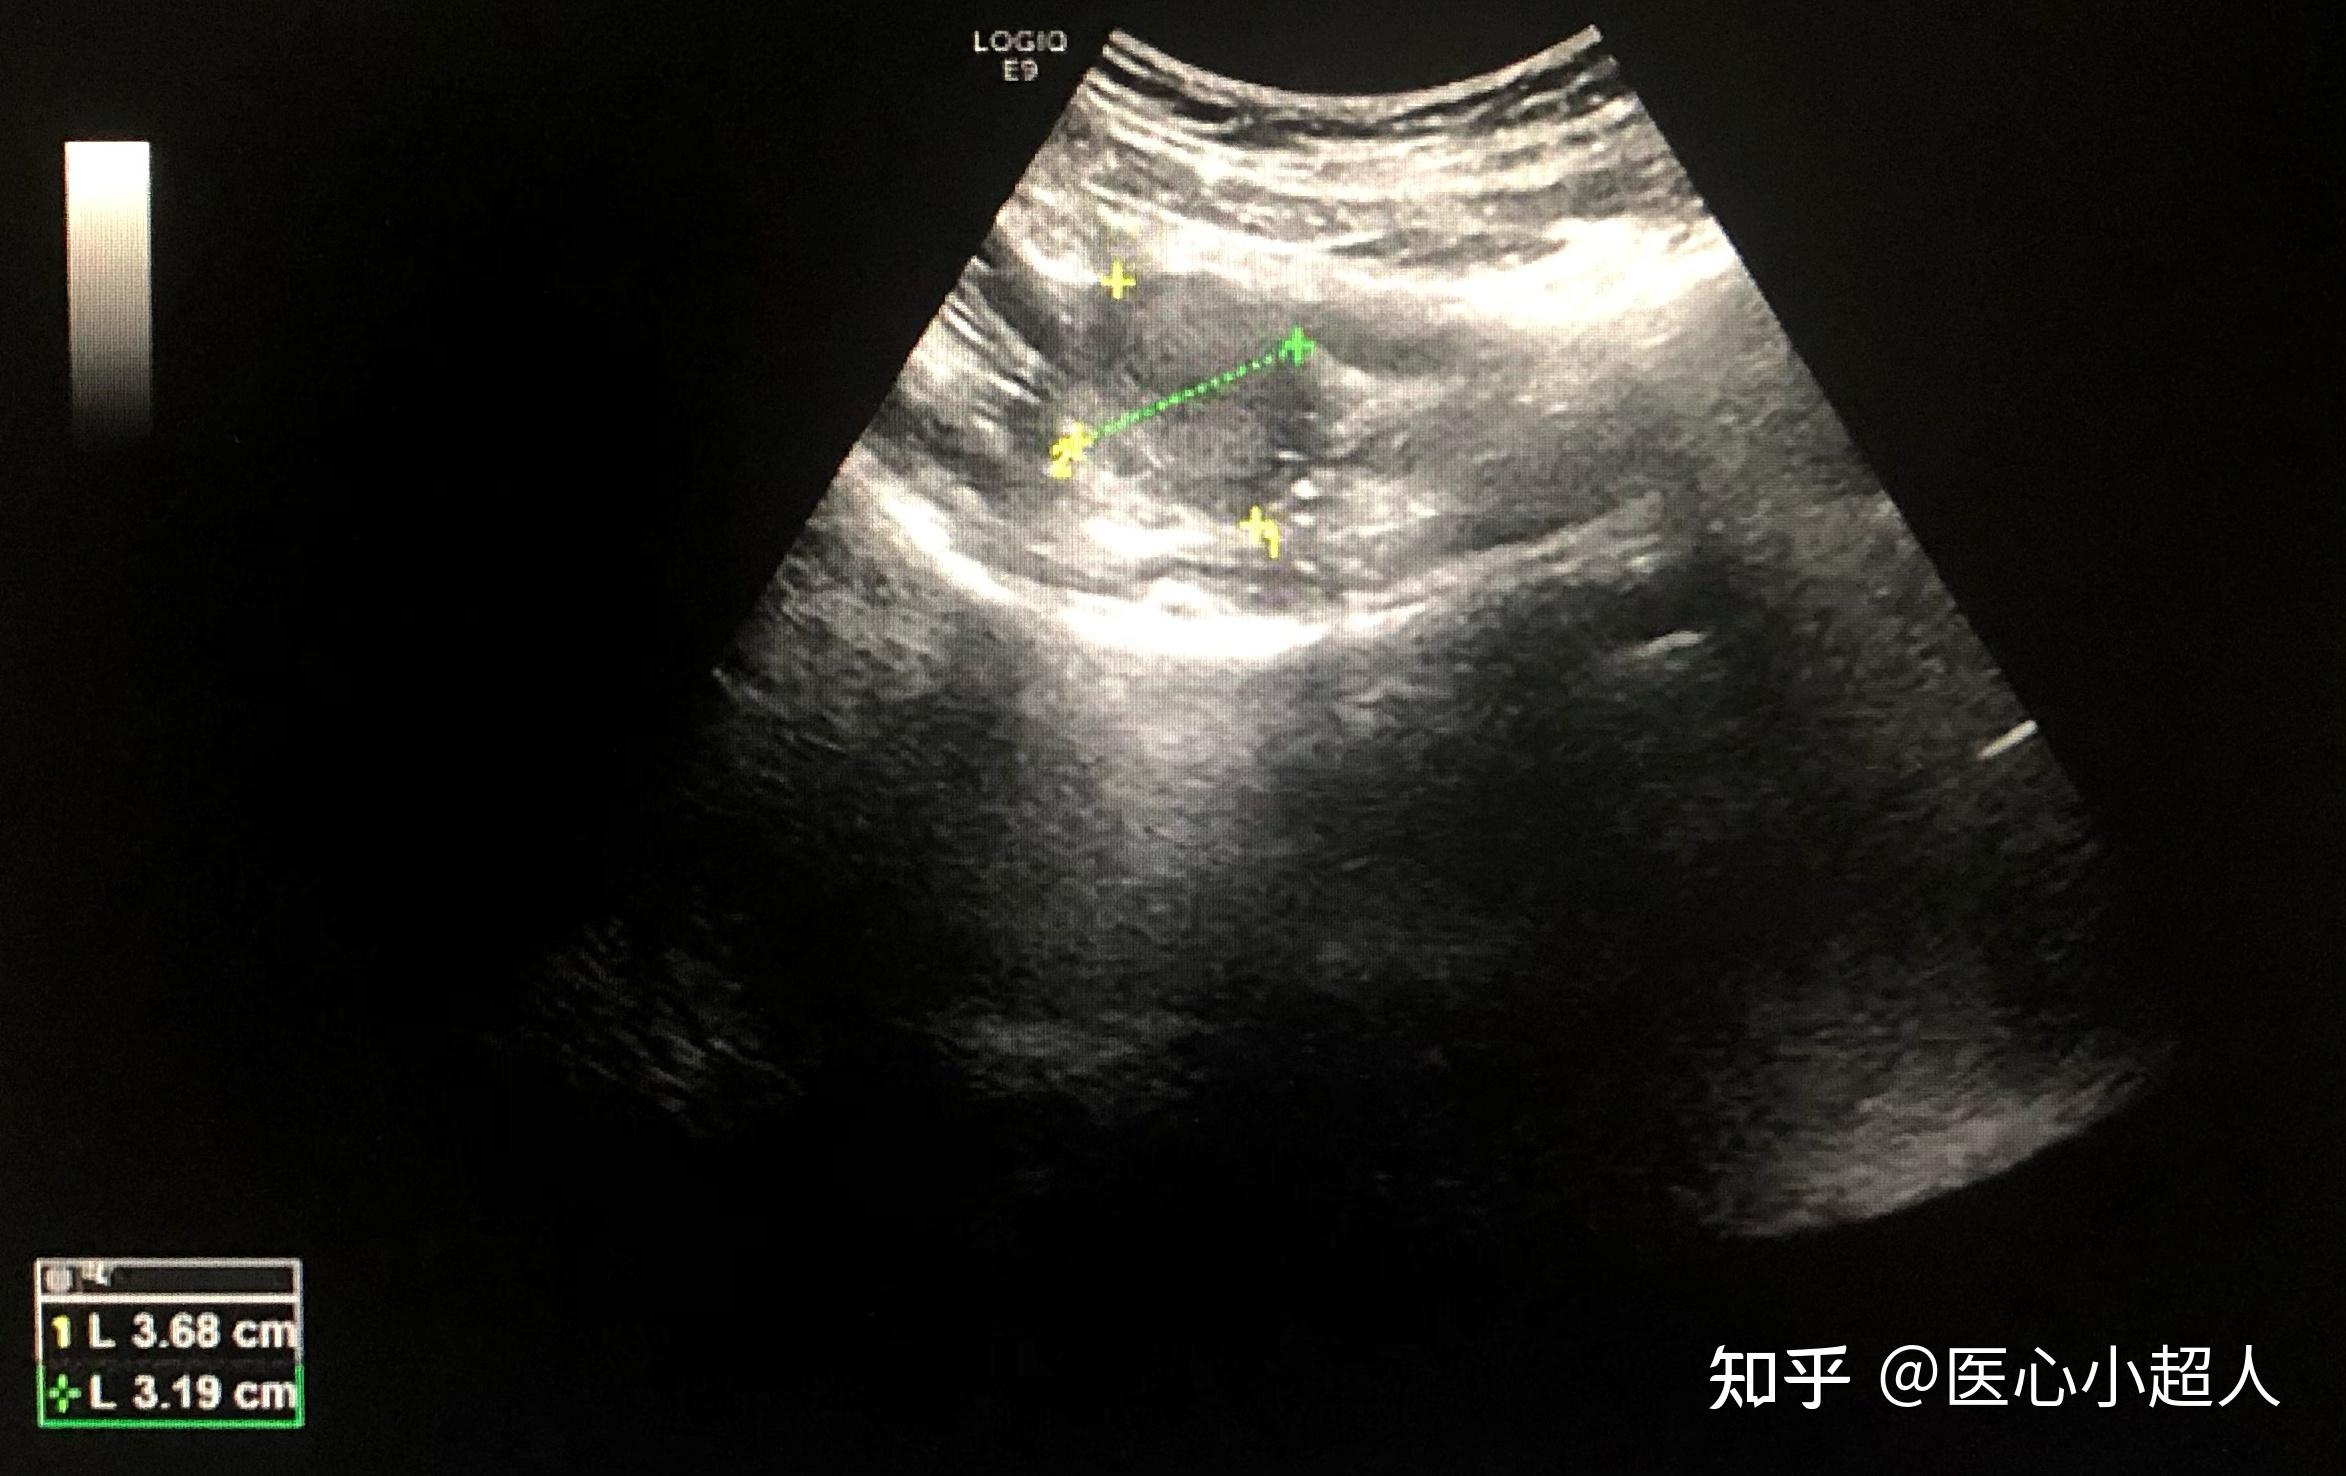 寶寶說不出苦！3歲童罕見卵巢畸胎瘤扭轉 手術切除保留卵巢功能 - 亞洲大學附屬醫院